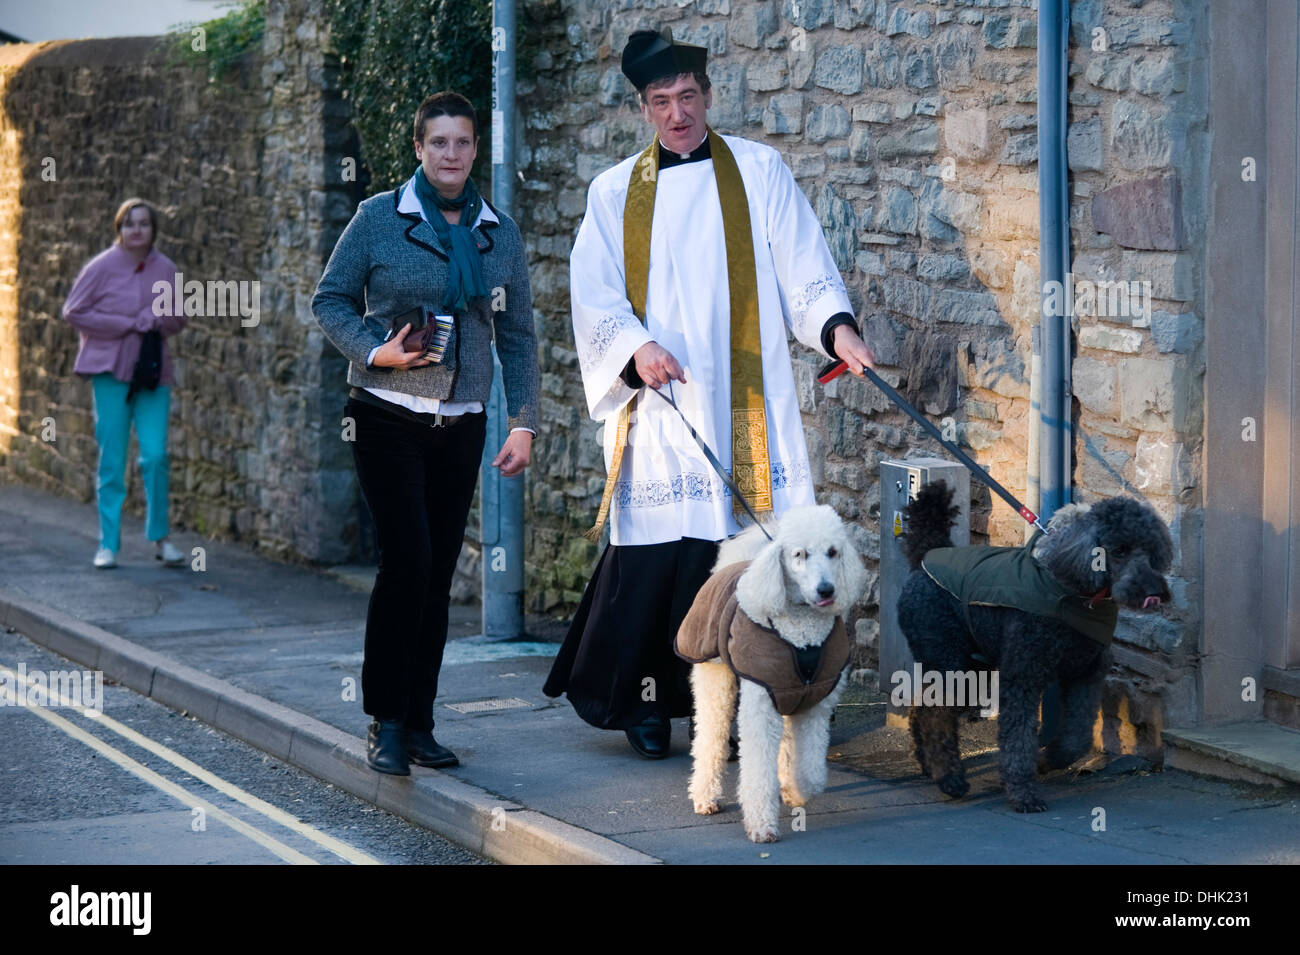 Vicaire de St Mary's Church avec ses caniches sur le souvenir parade de dimanche à Hay-on-Wye Powys Pays de Galles UK Banque D'Images